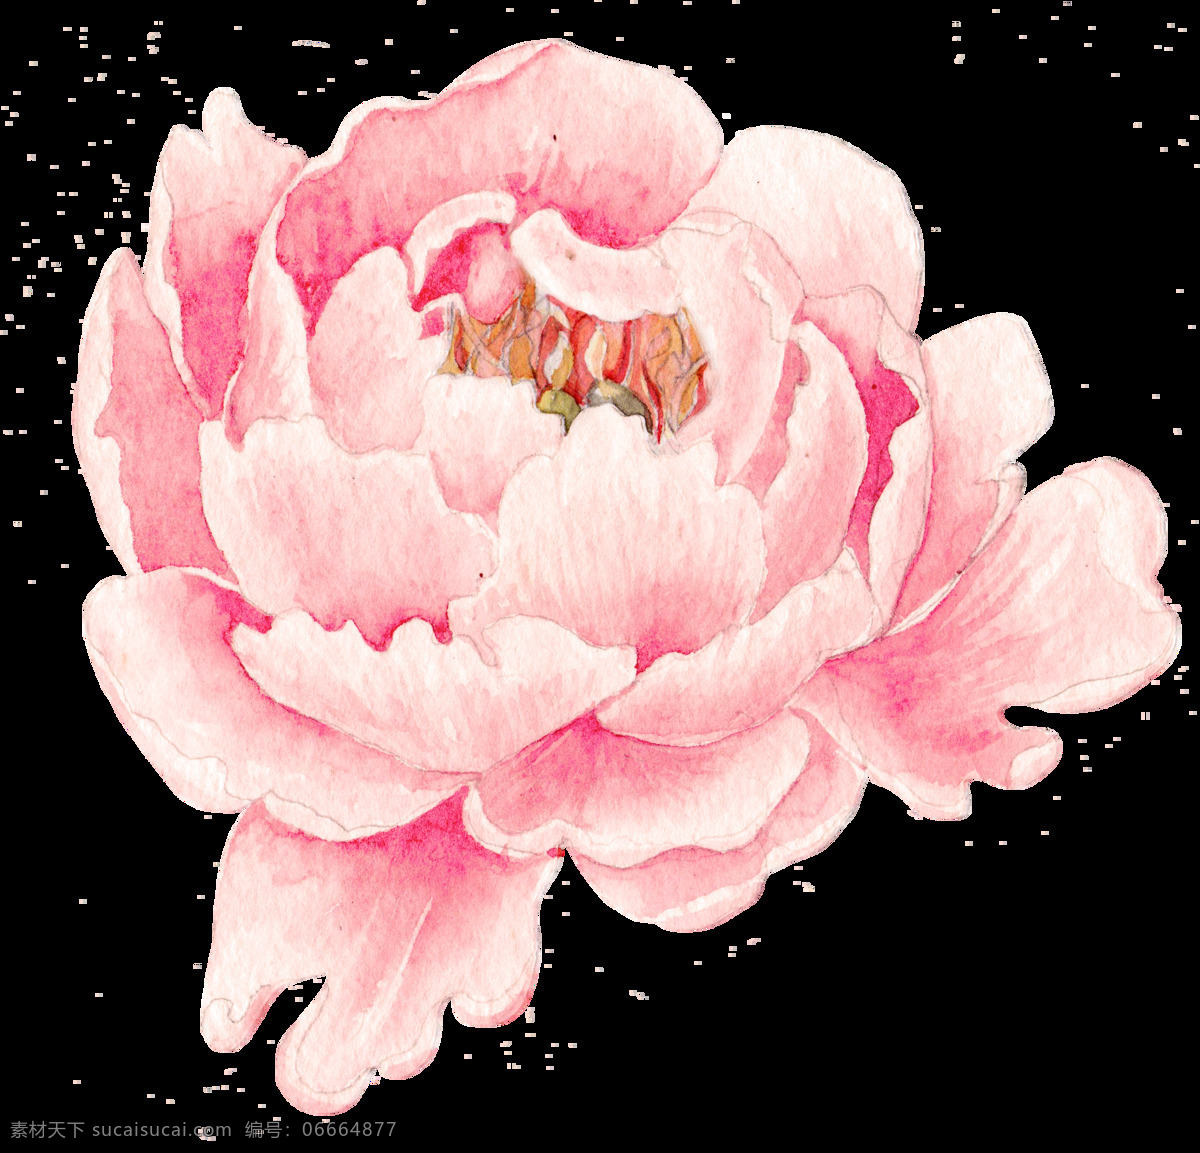 花 叶 牡丹 玫瑰 水彩 美丽 装饰 水墨 水墨牡丹 水墨花 水墨画 图形 图案 插图 绘图 花束 水彩牡丹 水彩花朵 花朵 植物 底纹边框 花边花纹